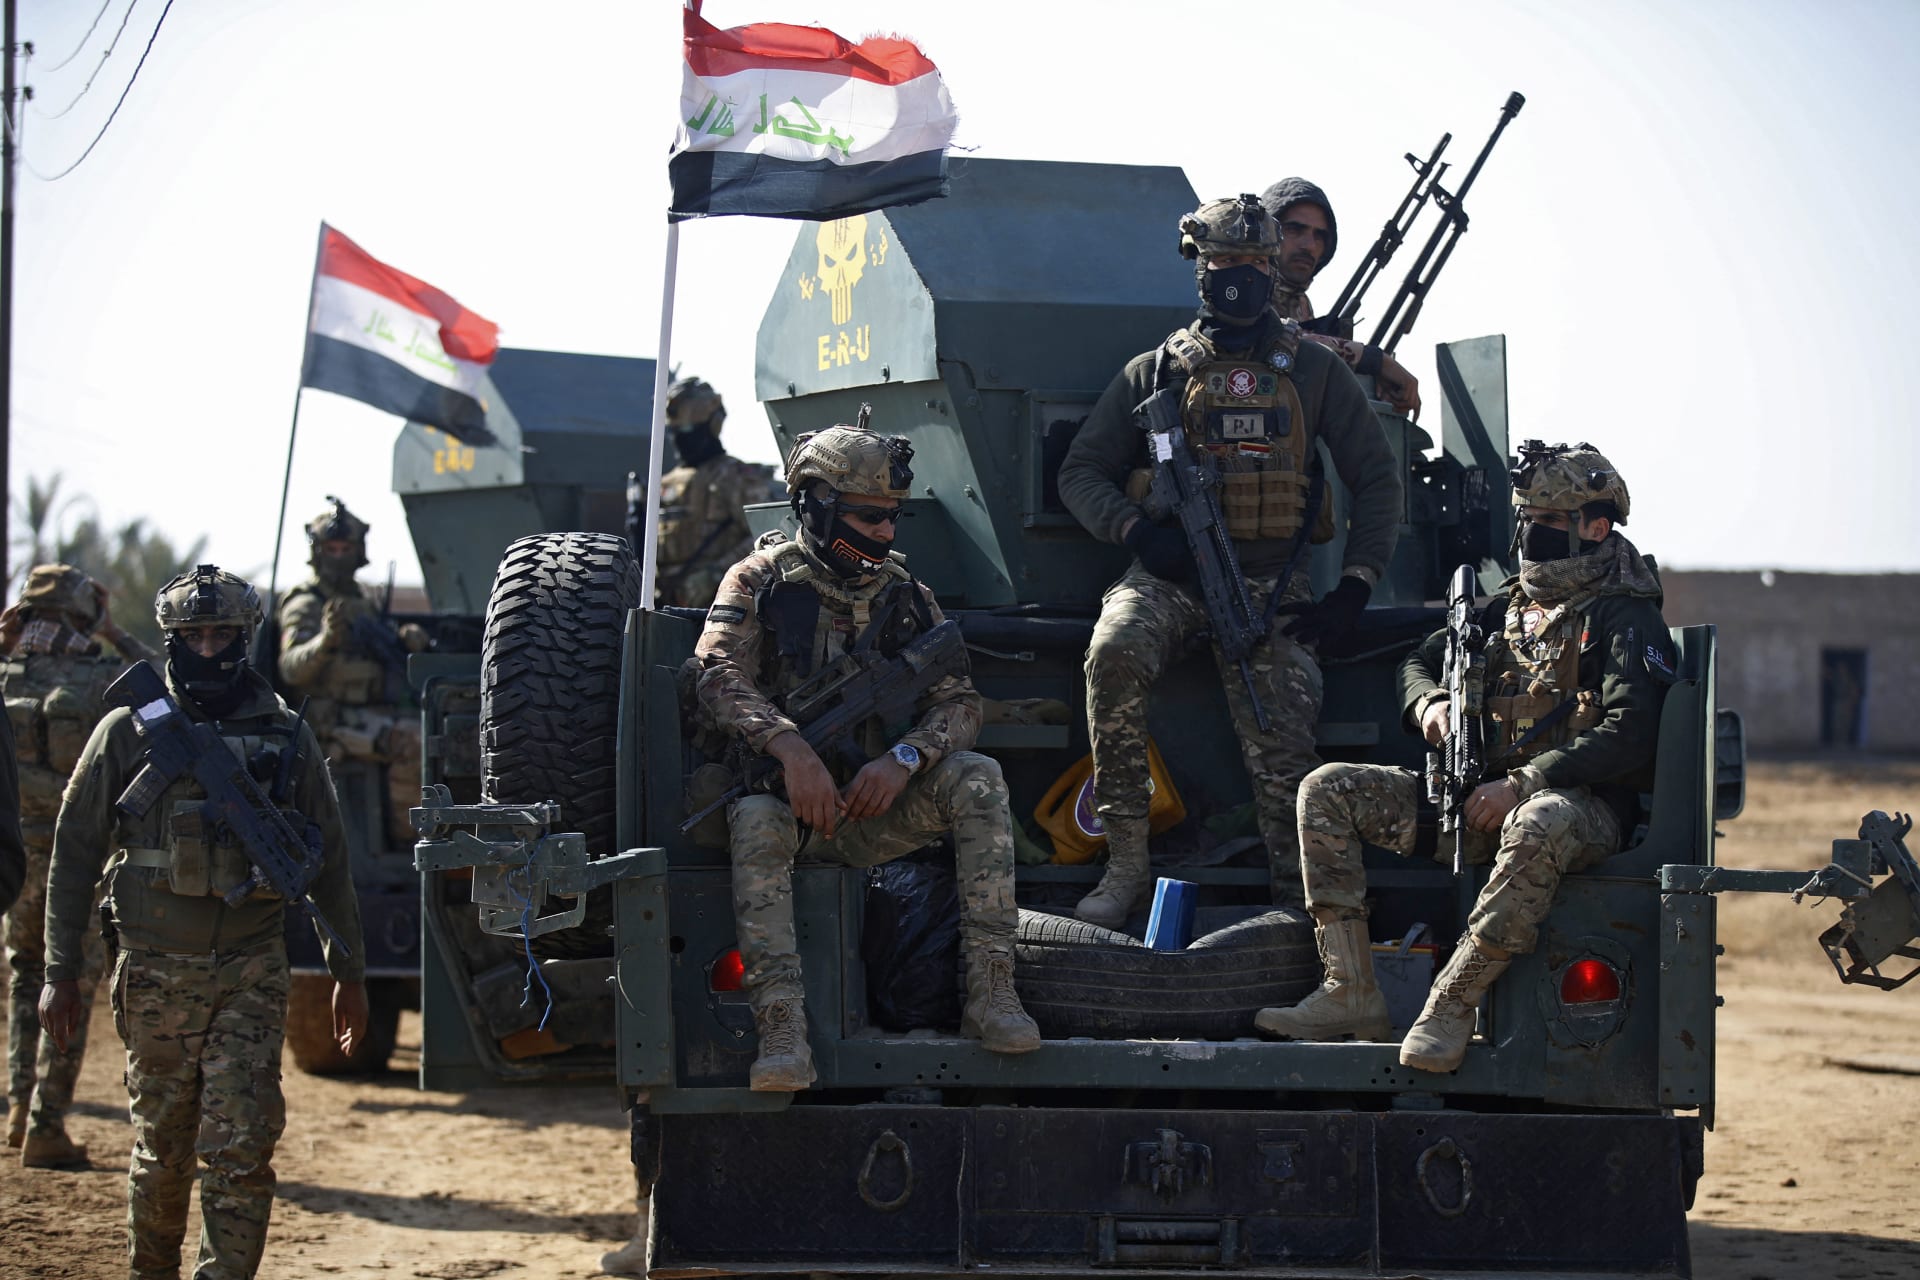  العراق يعلن شن عملية "سيوف الحق" ضد فلول "داعش" في 3 محافظات بعد هجوم دموي